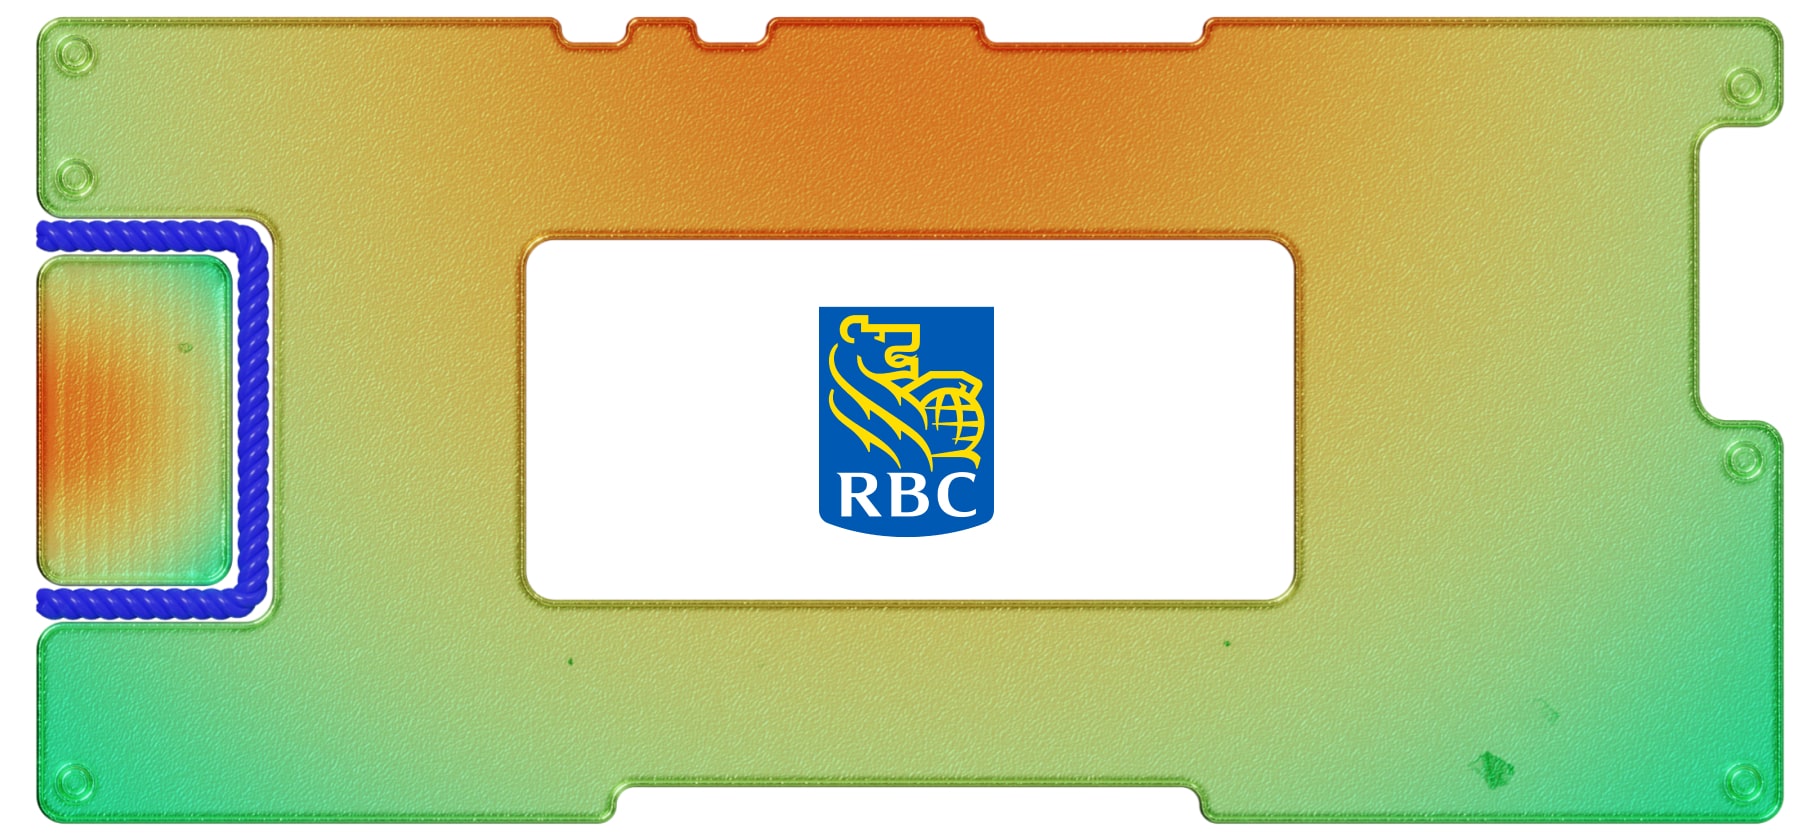 Обзор Royal Bank of Canada: новый эмитент из Канады на СПб-бирже